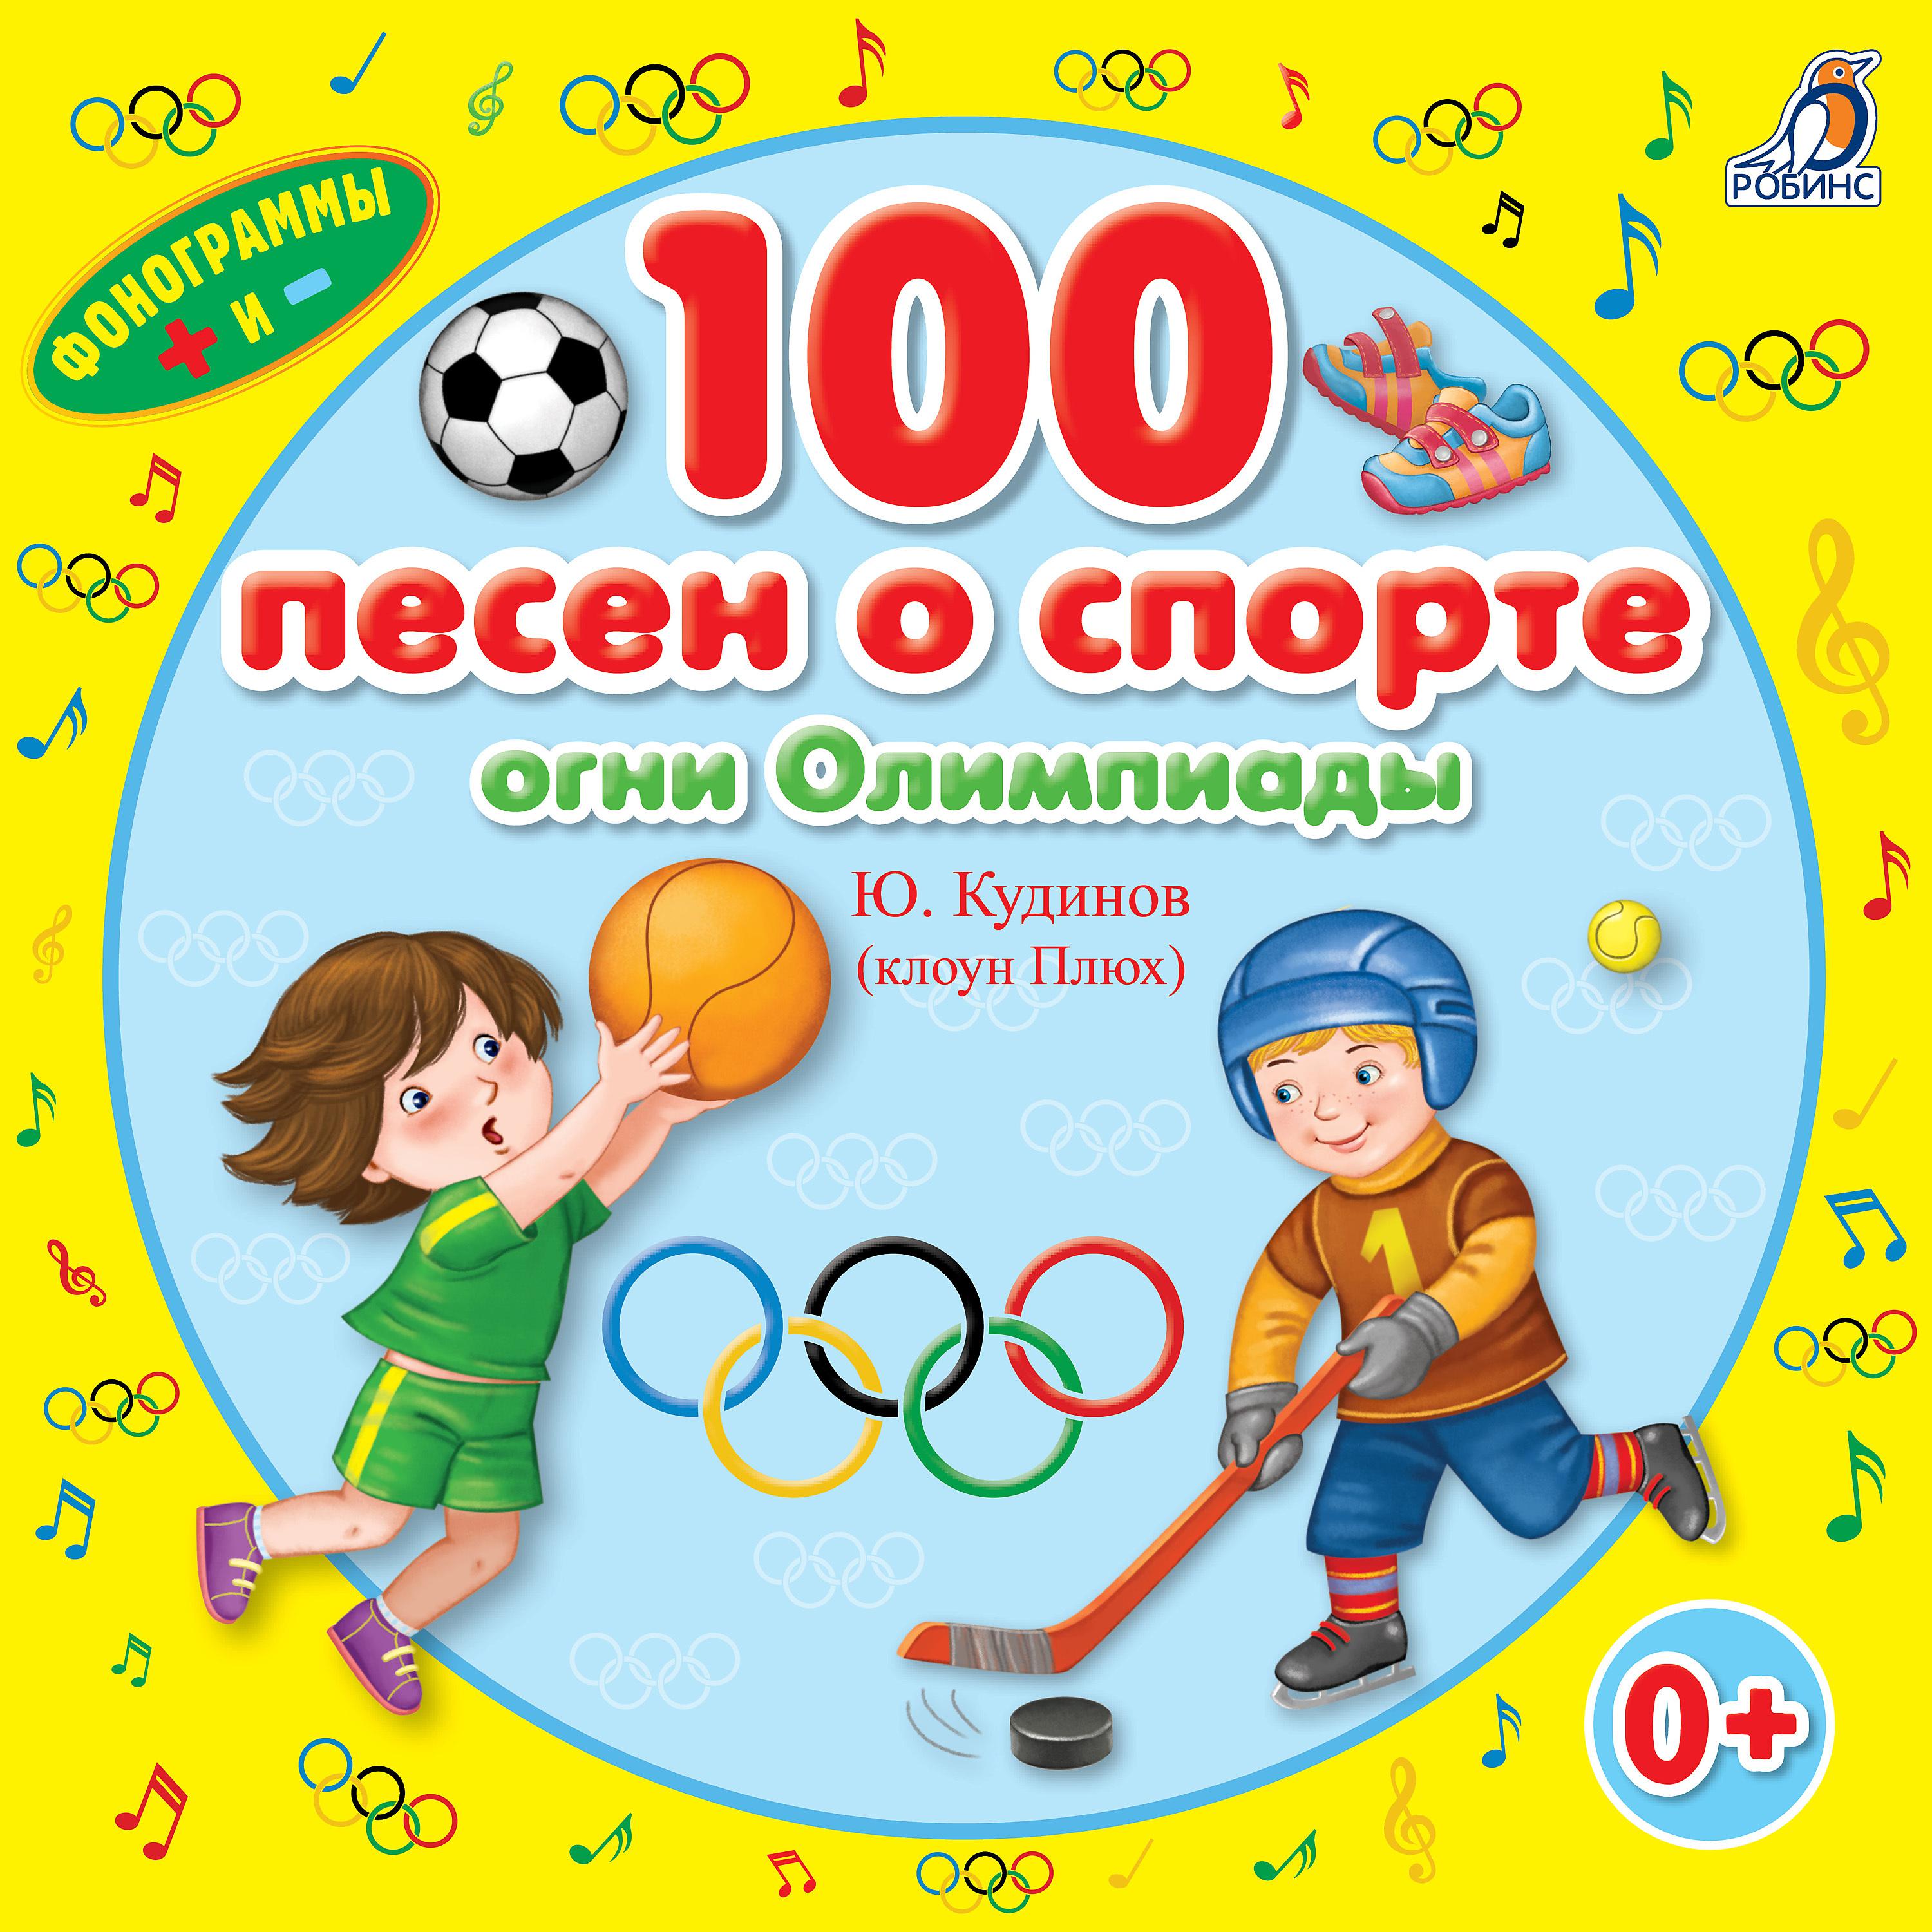 Клоун плюх текст. Книги о спорте для детей. Детские книги про спорт. Детская книга о спорте. Песня про спорт.